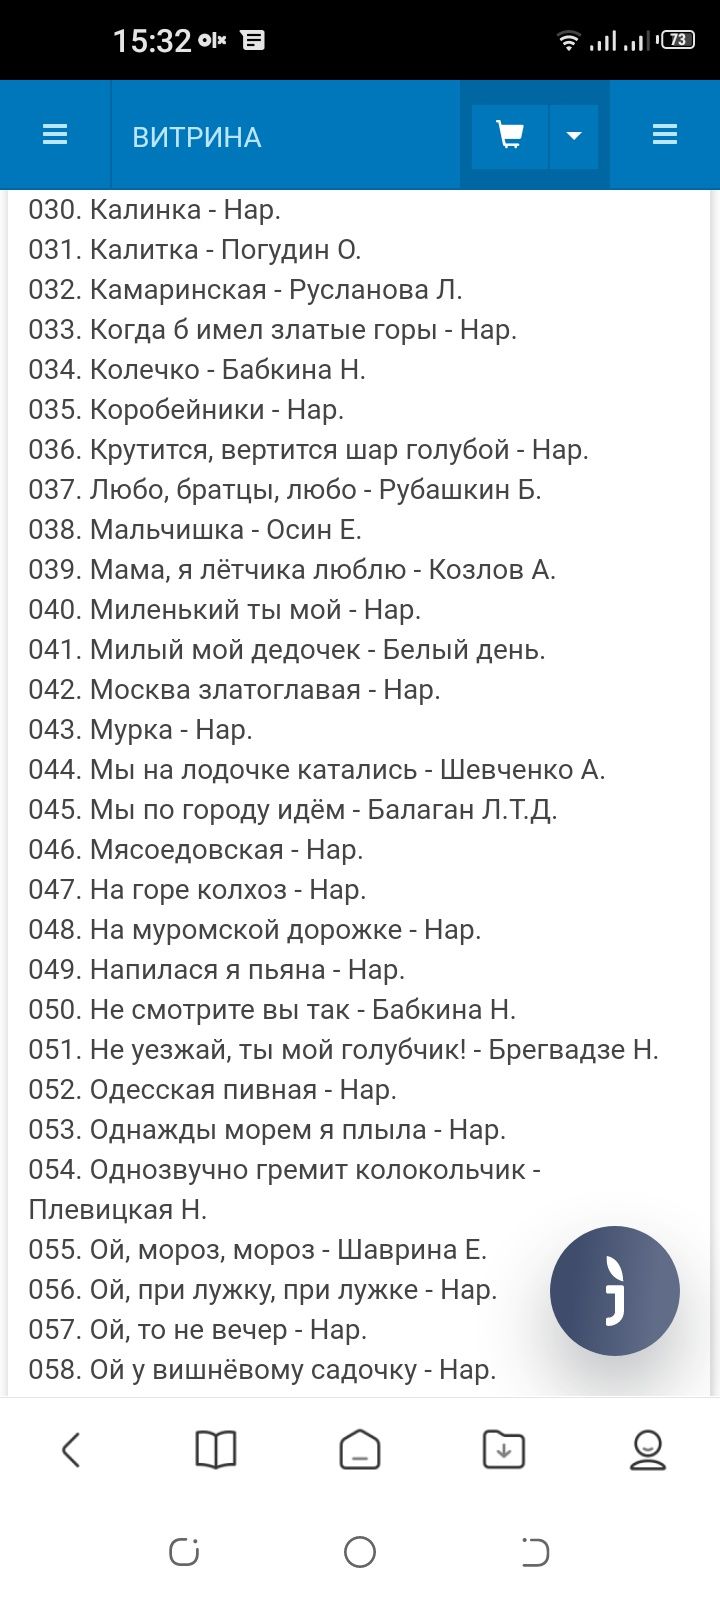 Караоке-диск "Любимые застольные" 100 песен